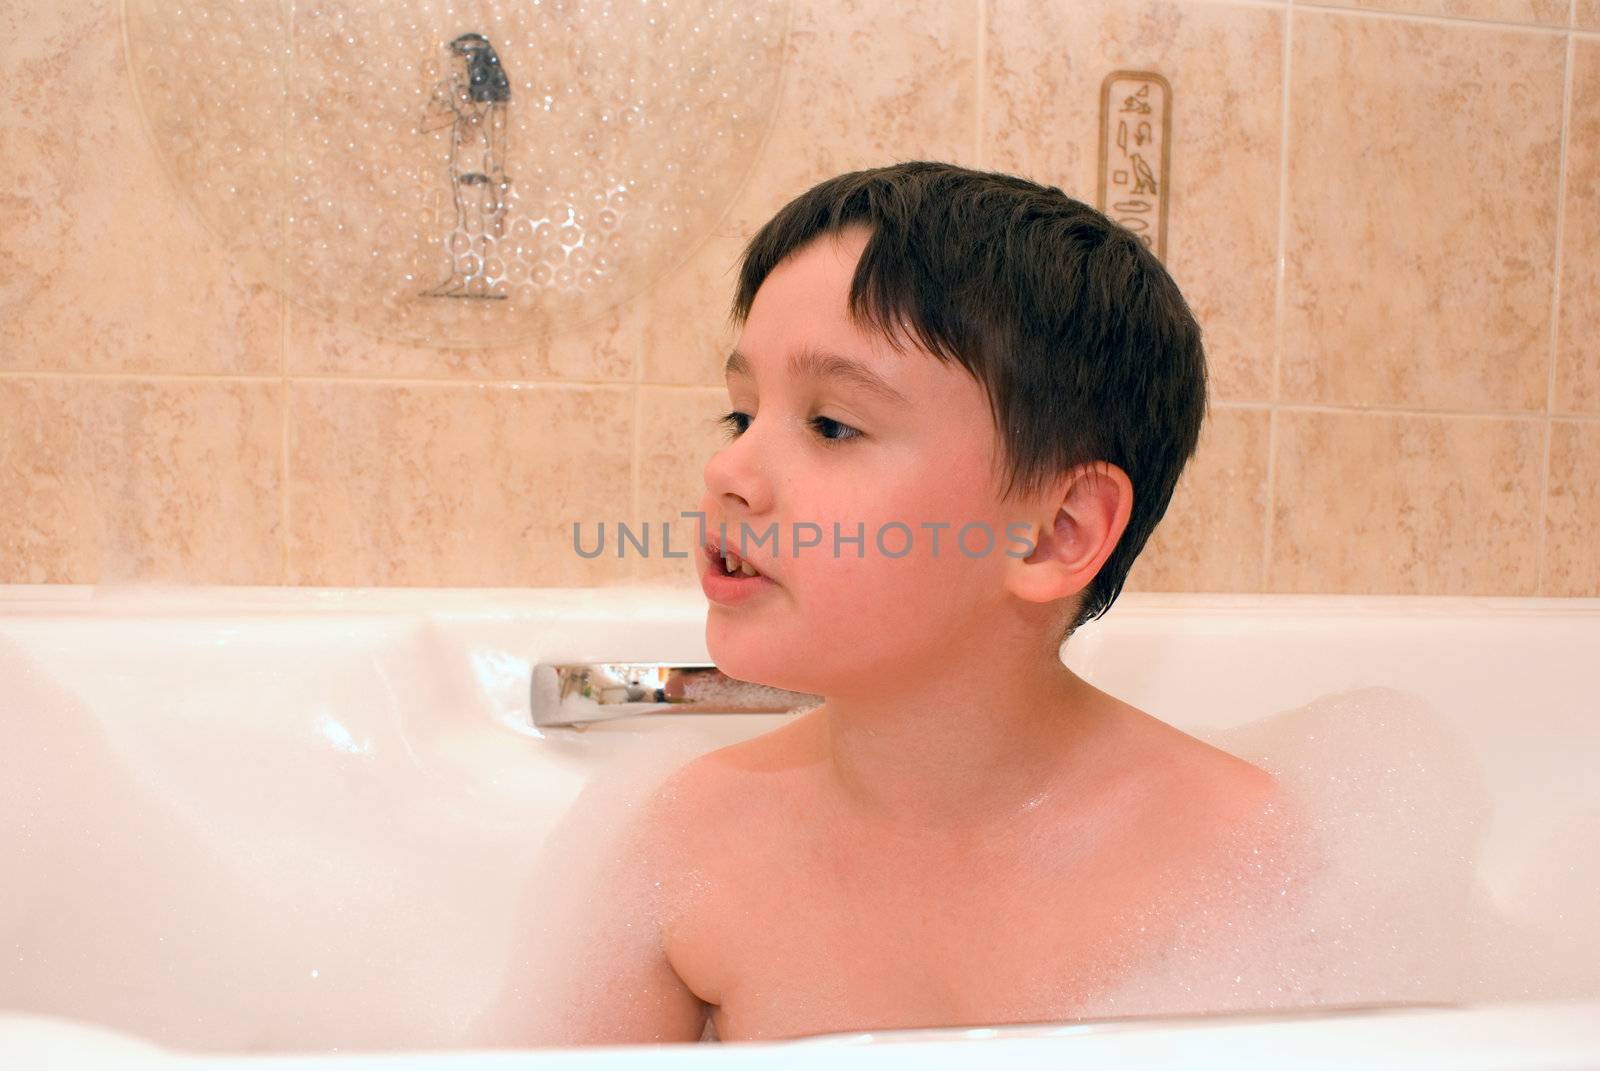 little boy is sitting in bathtun with foam